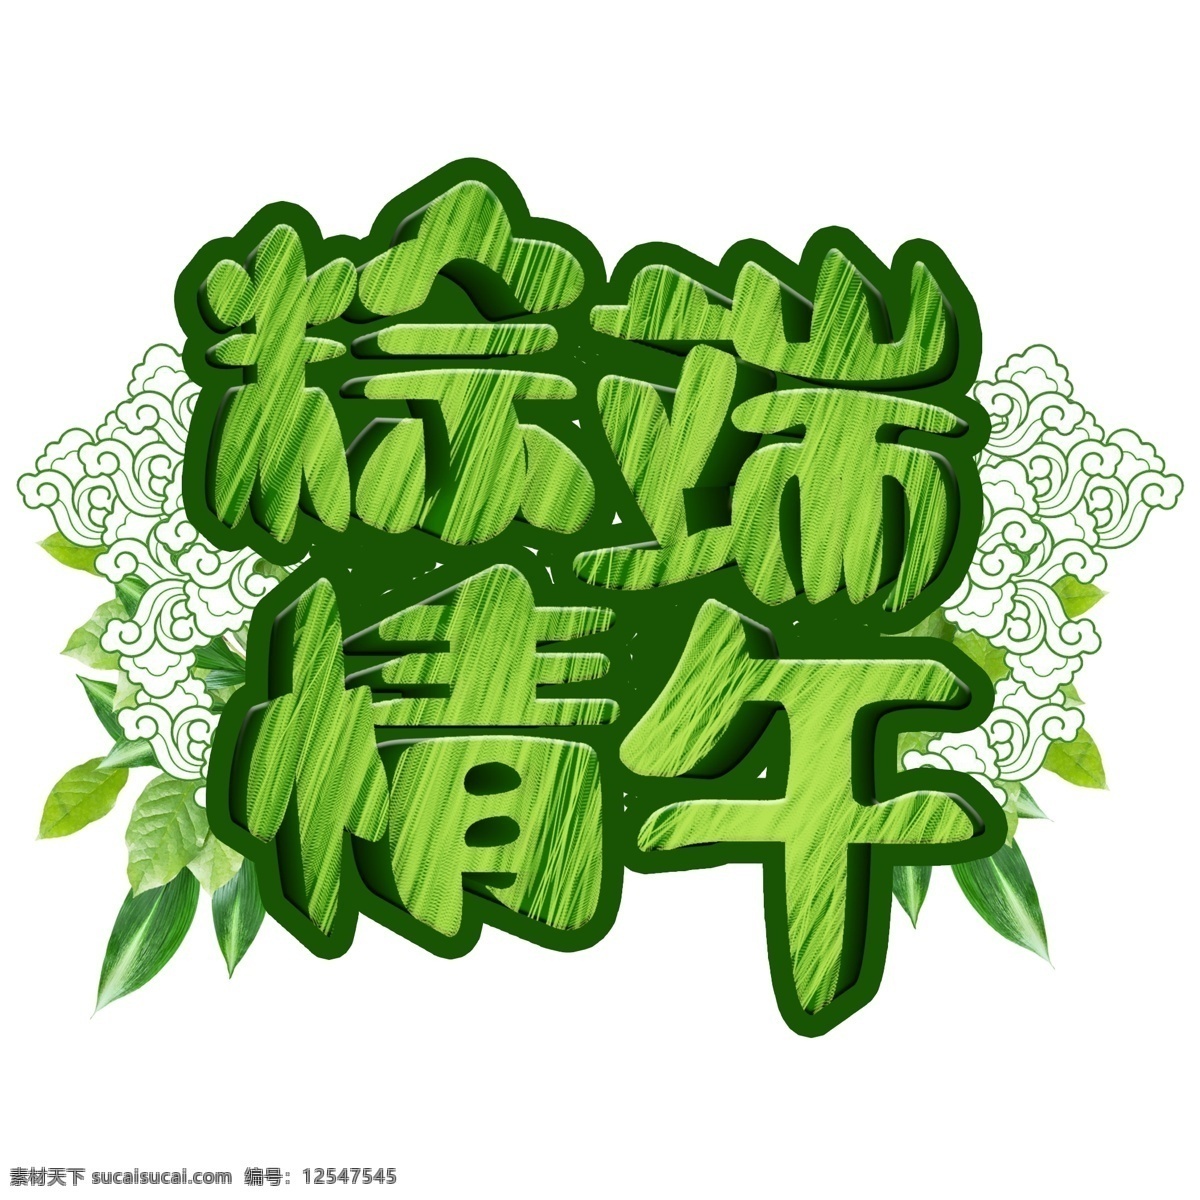 粽 情 端午 绿色 字体 元素 粽情端午 绿色字体 树叶 字体设计 创意字体 可爱字体 个性字体 艺术字 字体元素 元素设计